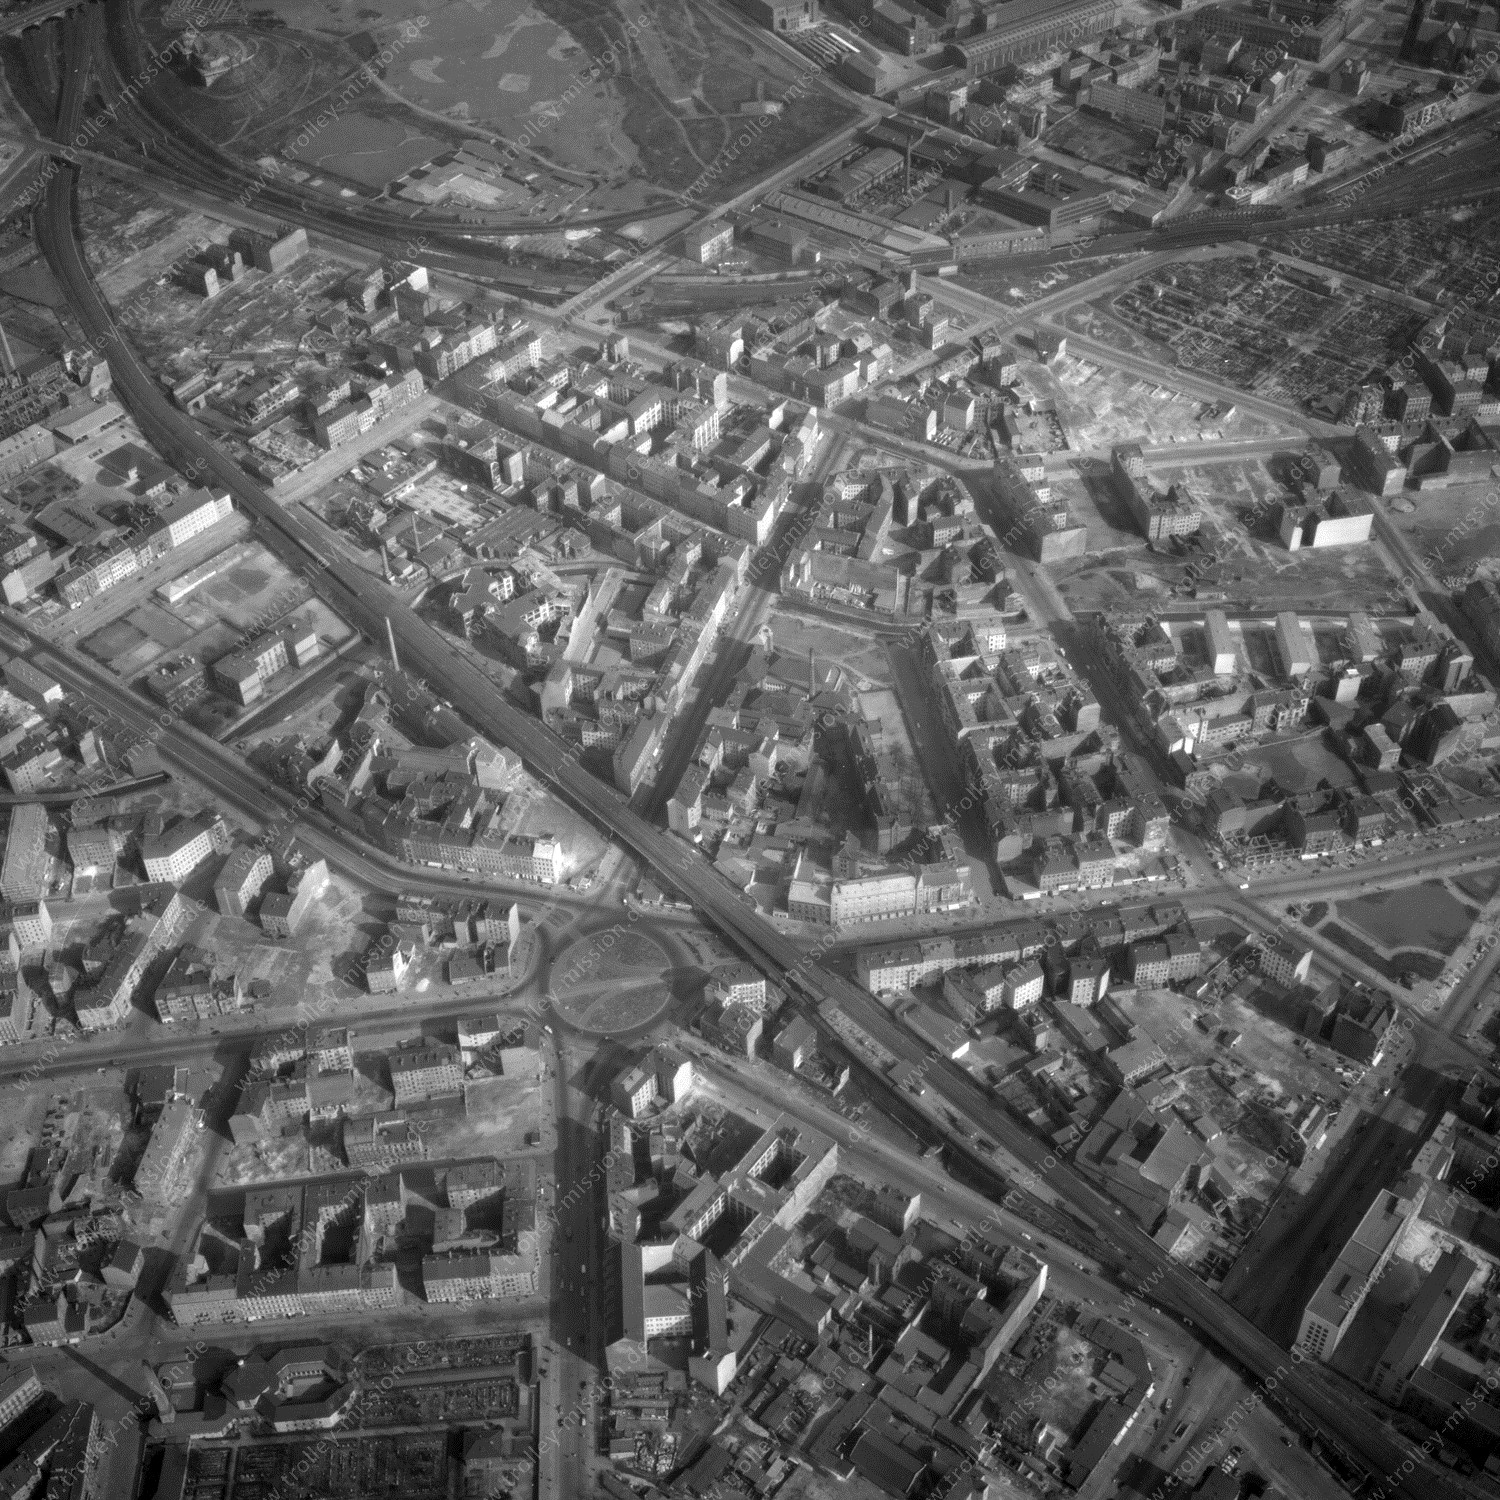 Alte Fotos und Luftbilder von Berlin - Luftbildaufnahme Nr. 05 - Historische Luftaufnahmen von West-Berlin aus dem Jahr 1954 - Flugstrecke Quebec